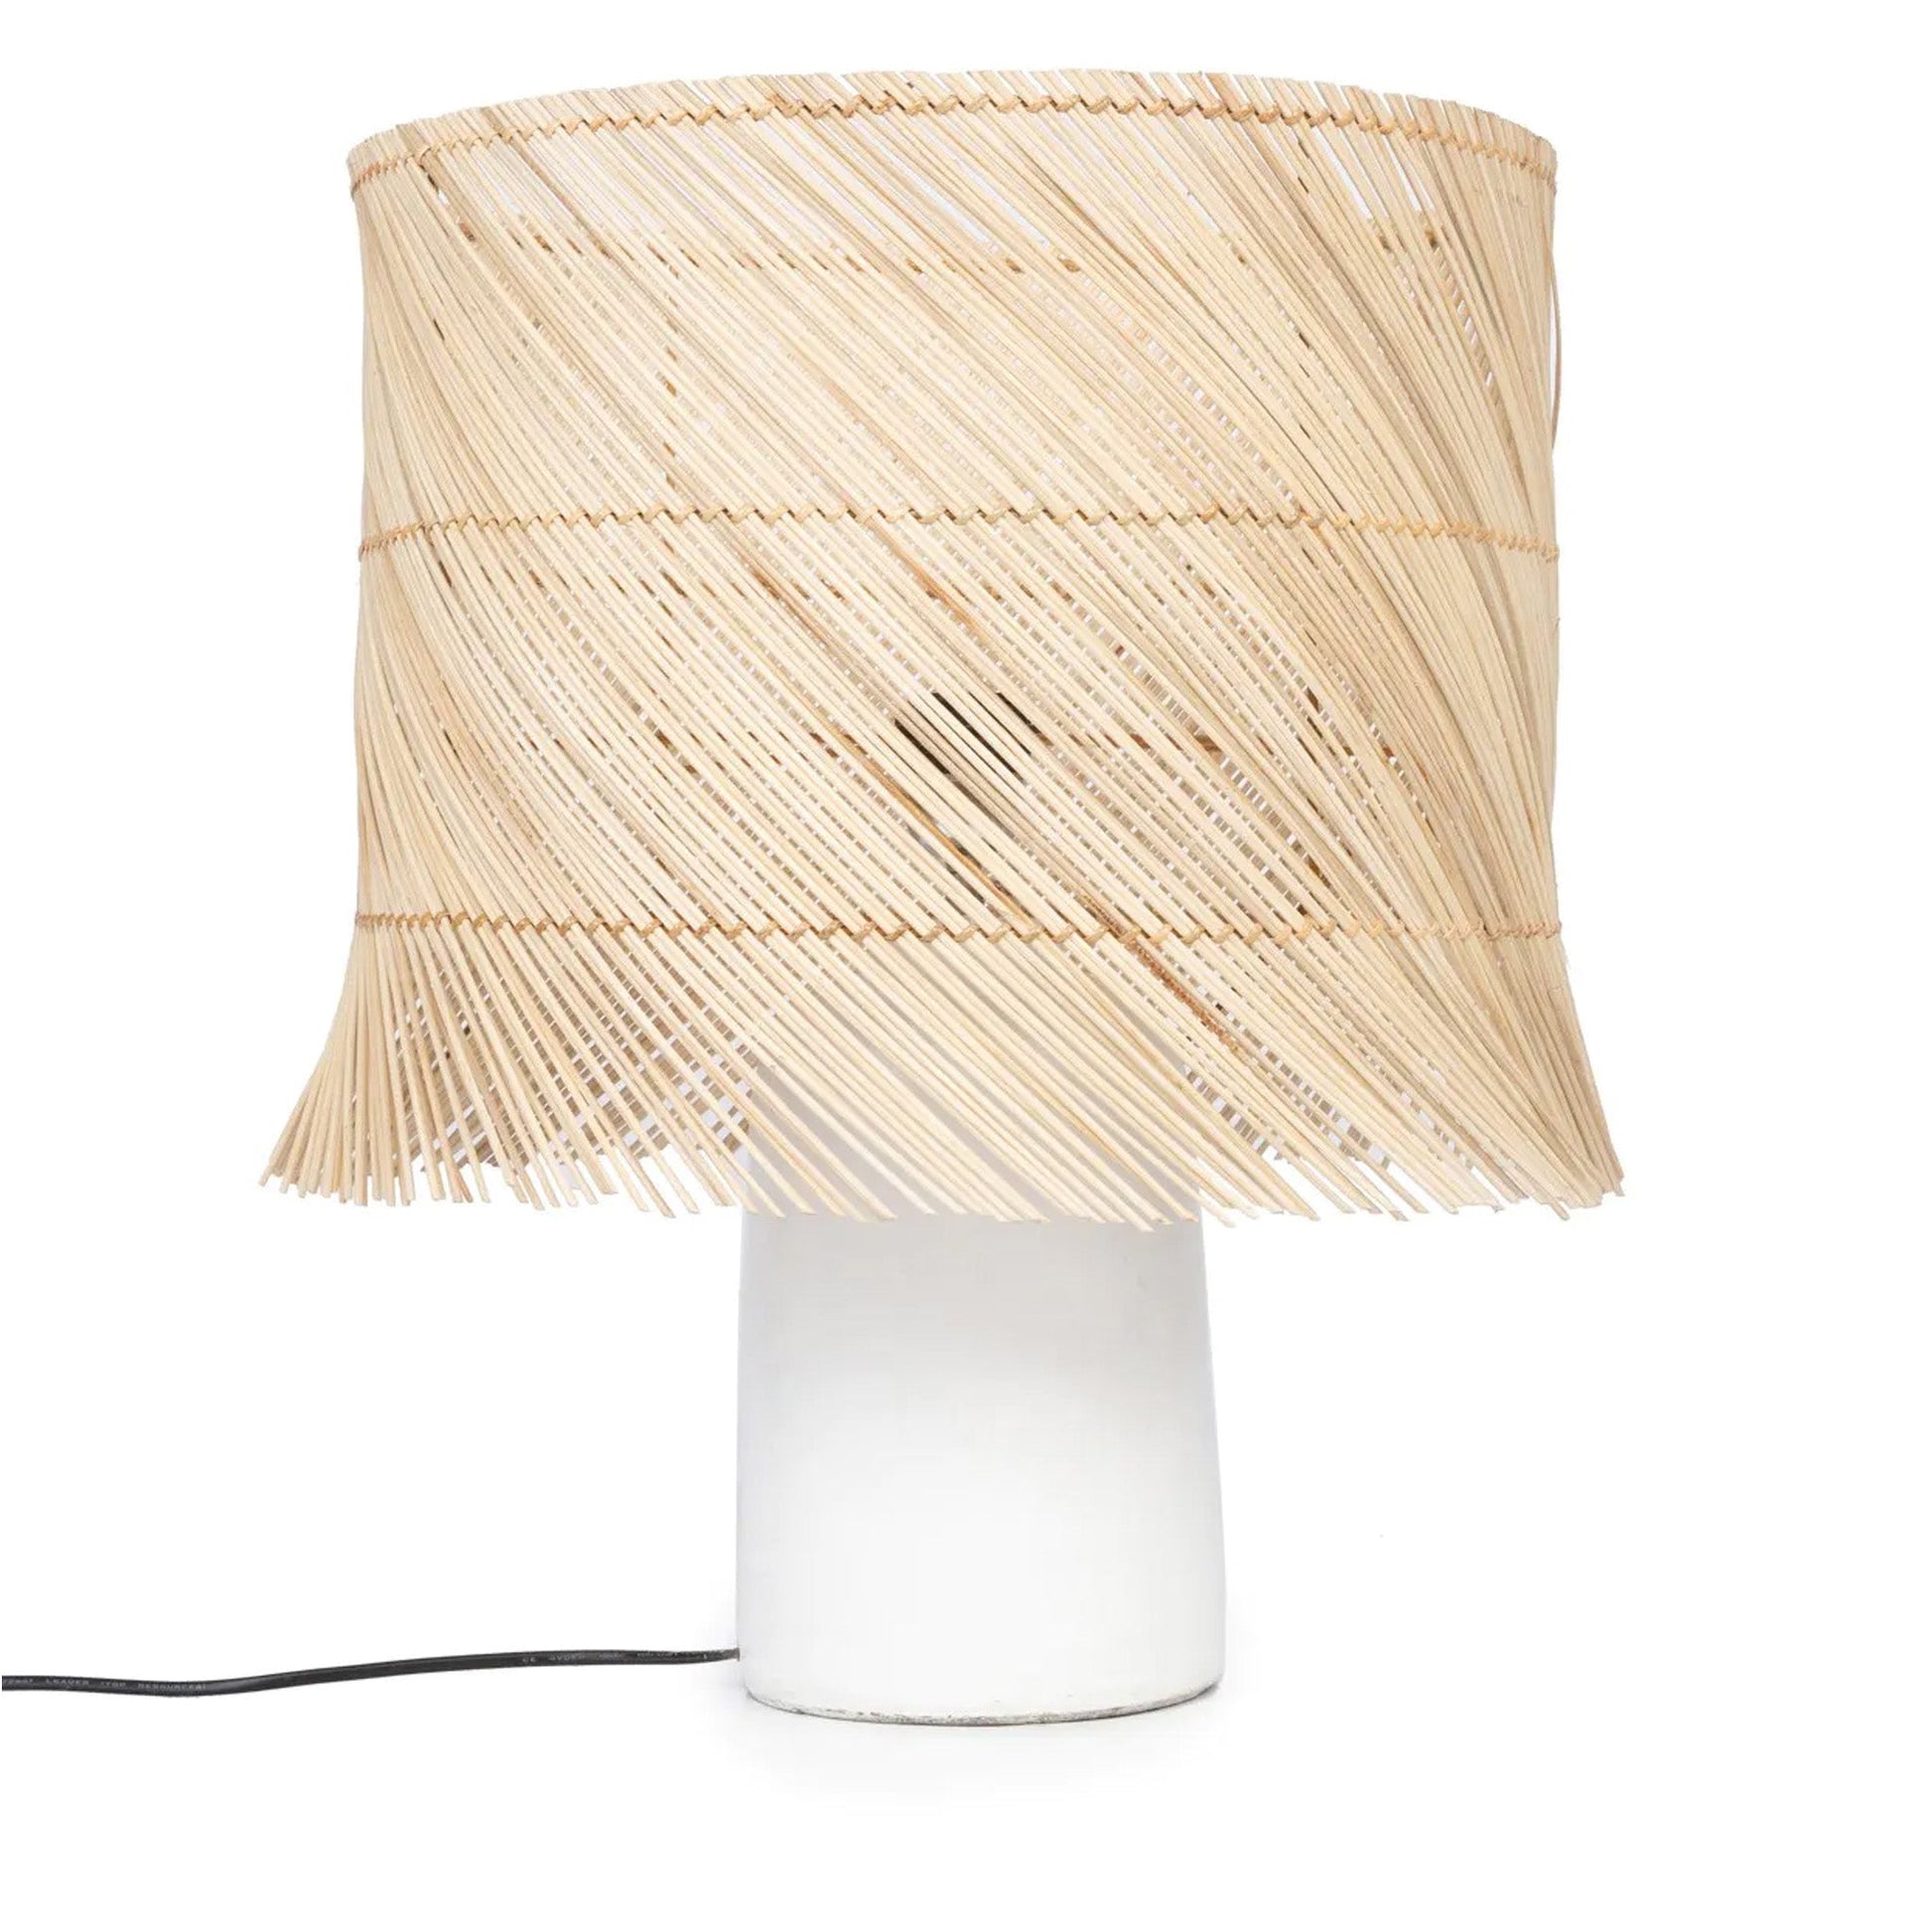 Tischlampe mit weißem Sockel und Lampenschirm aus Rattan - Vandeley